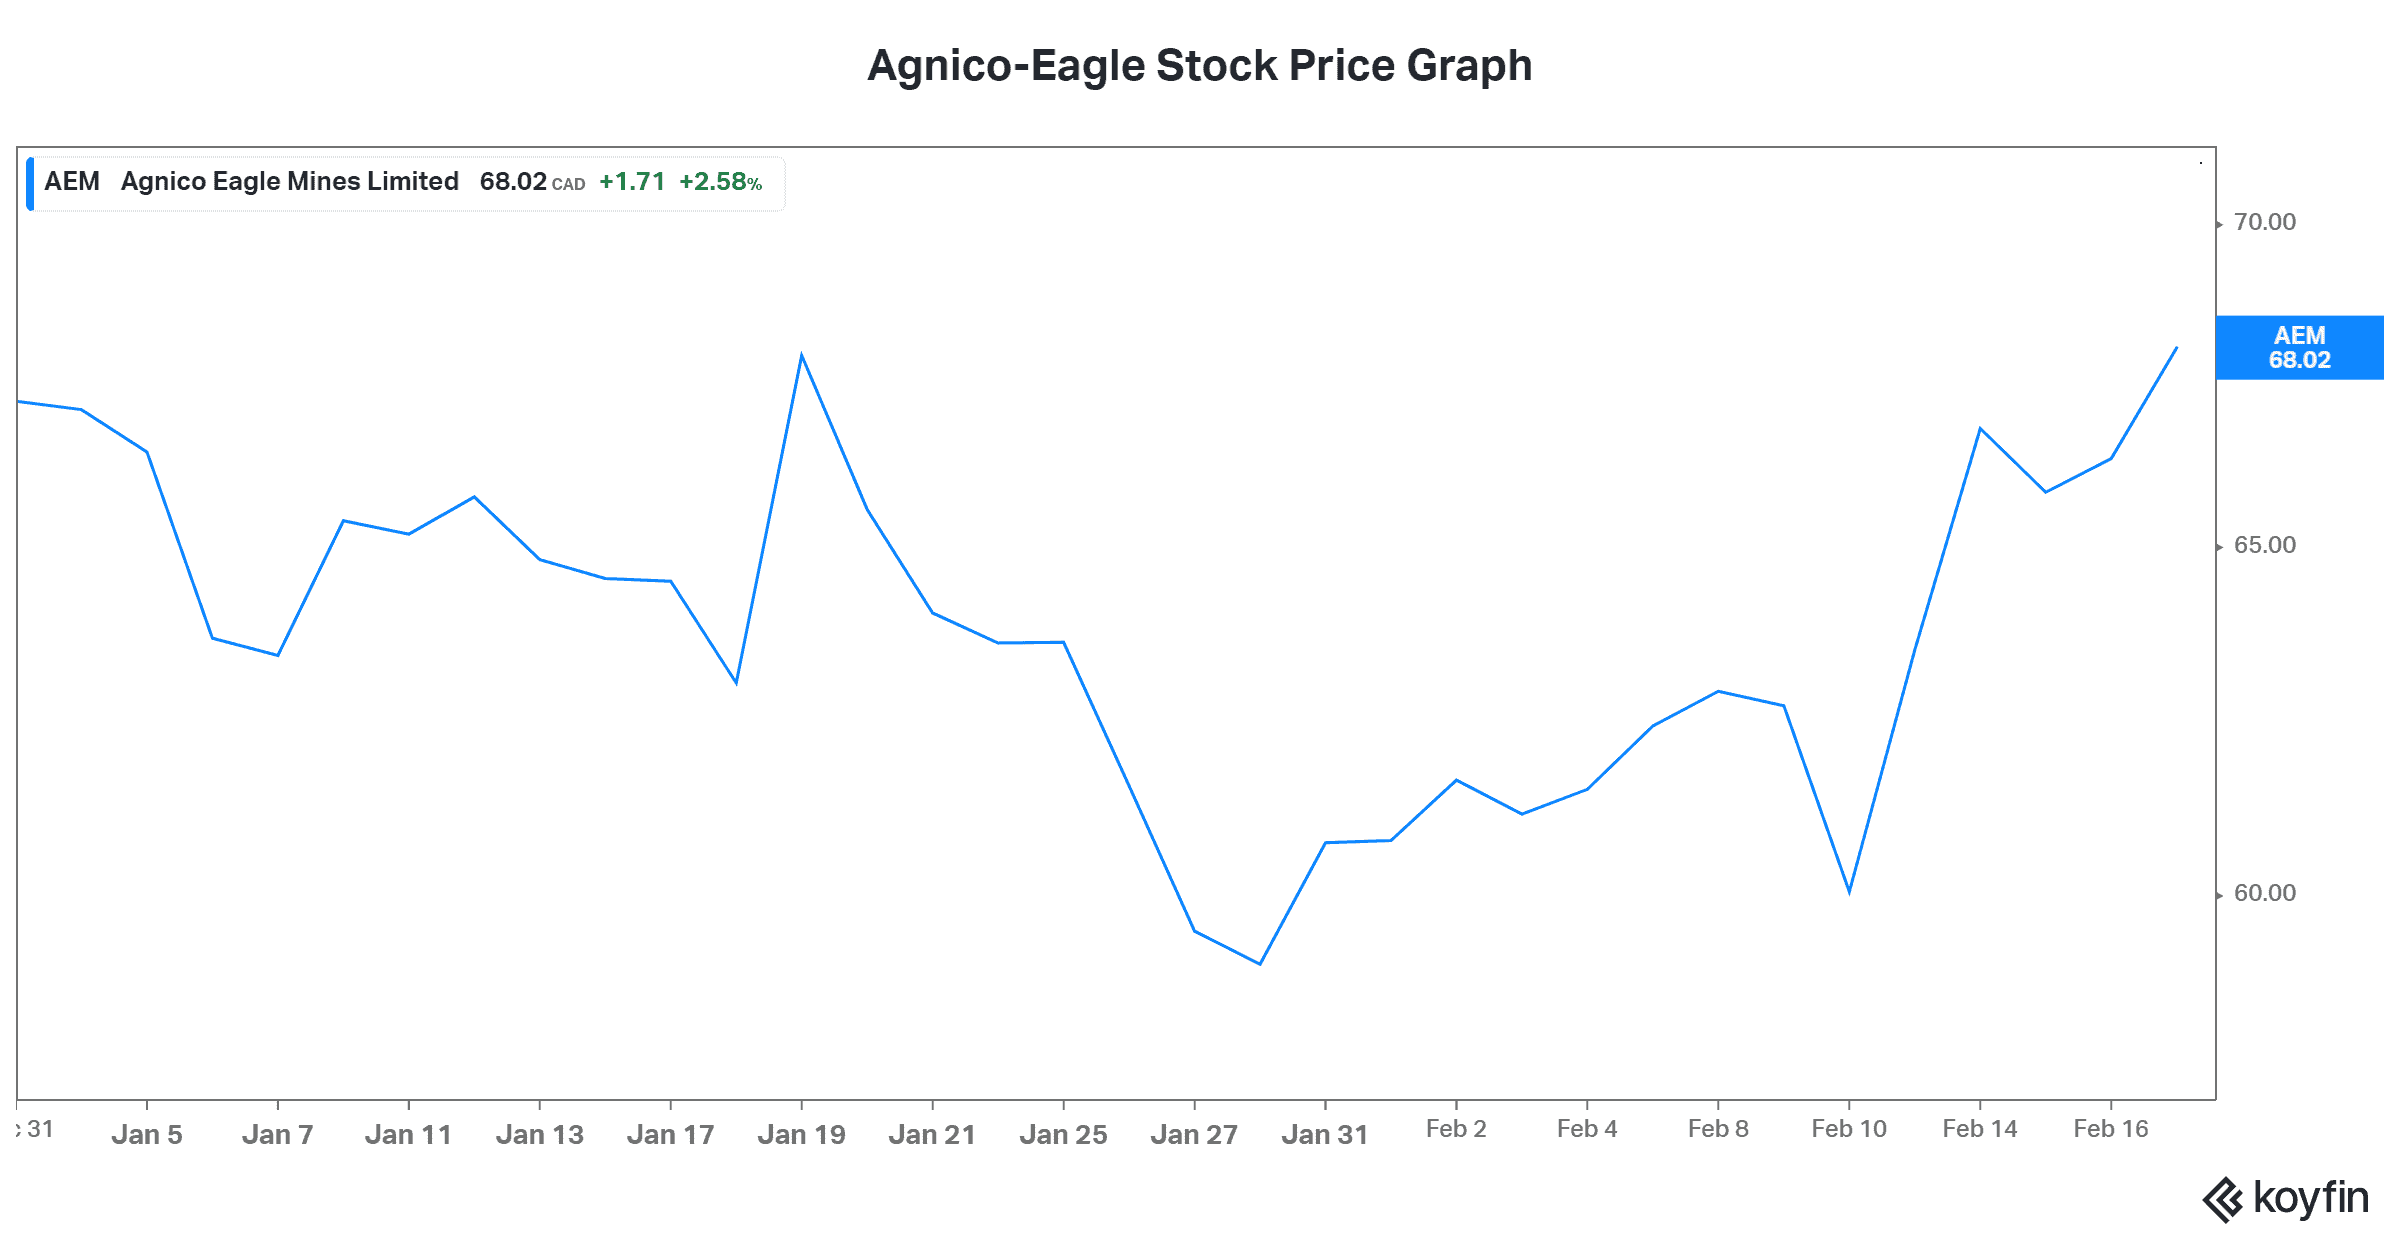 Gold stocks Agnico